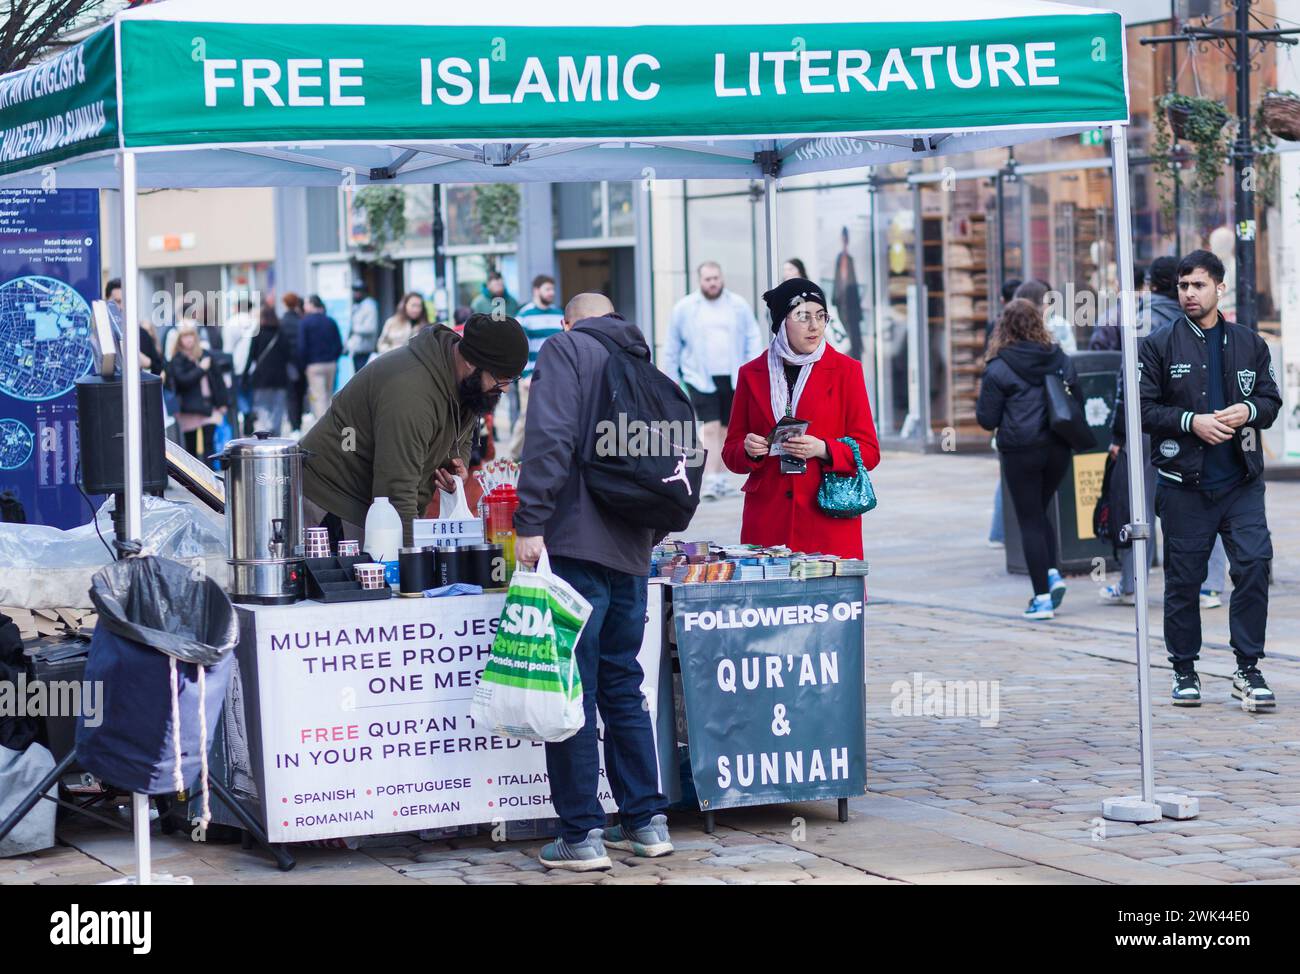 Ein Festzelt, das den Islam fördert und kostenlose Literatur anbietet Stockfoto